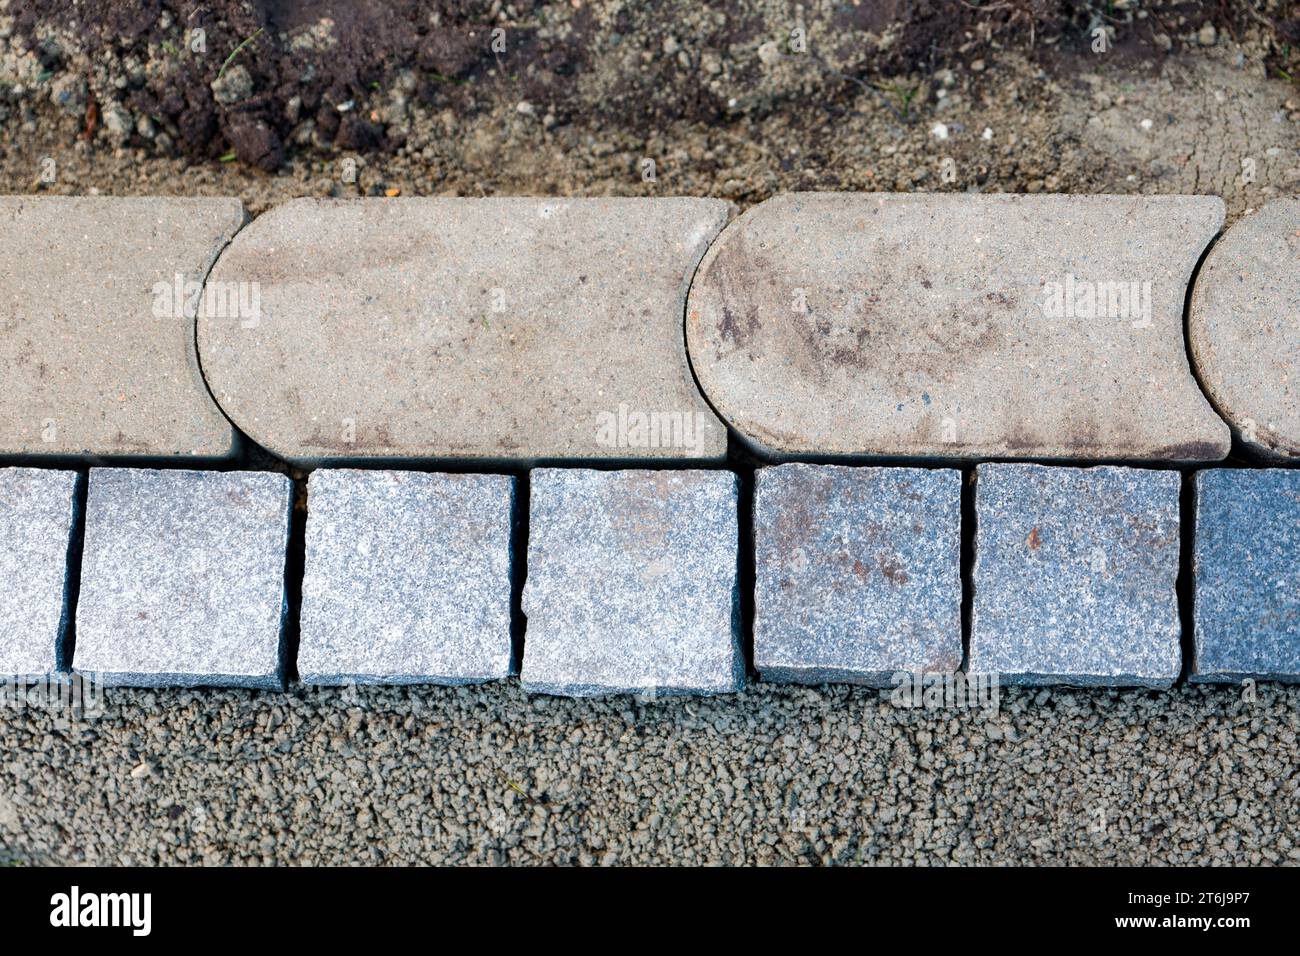 Conception de jardin, pose de nouvelles pierres de bordure dans un lit de mortier. Banque D'Images